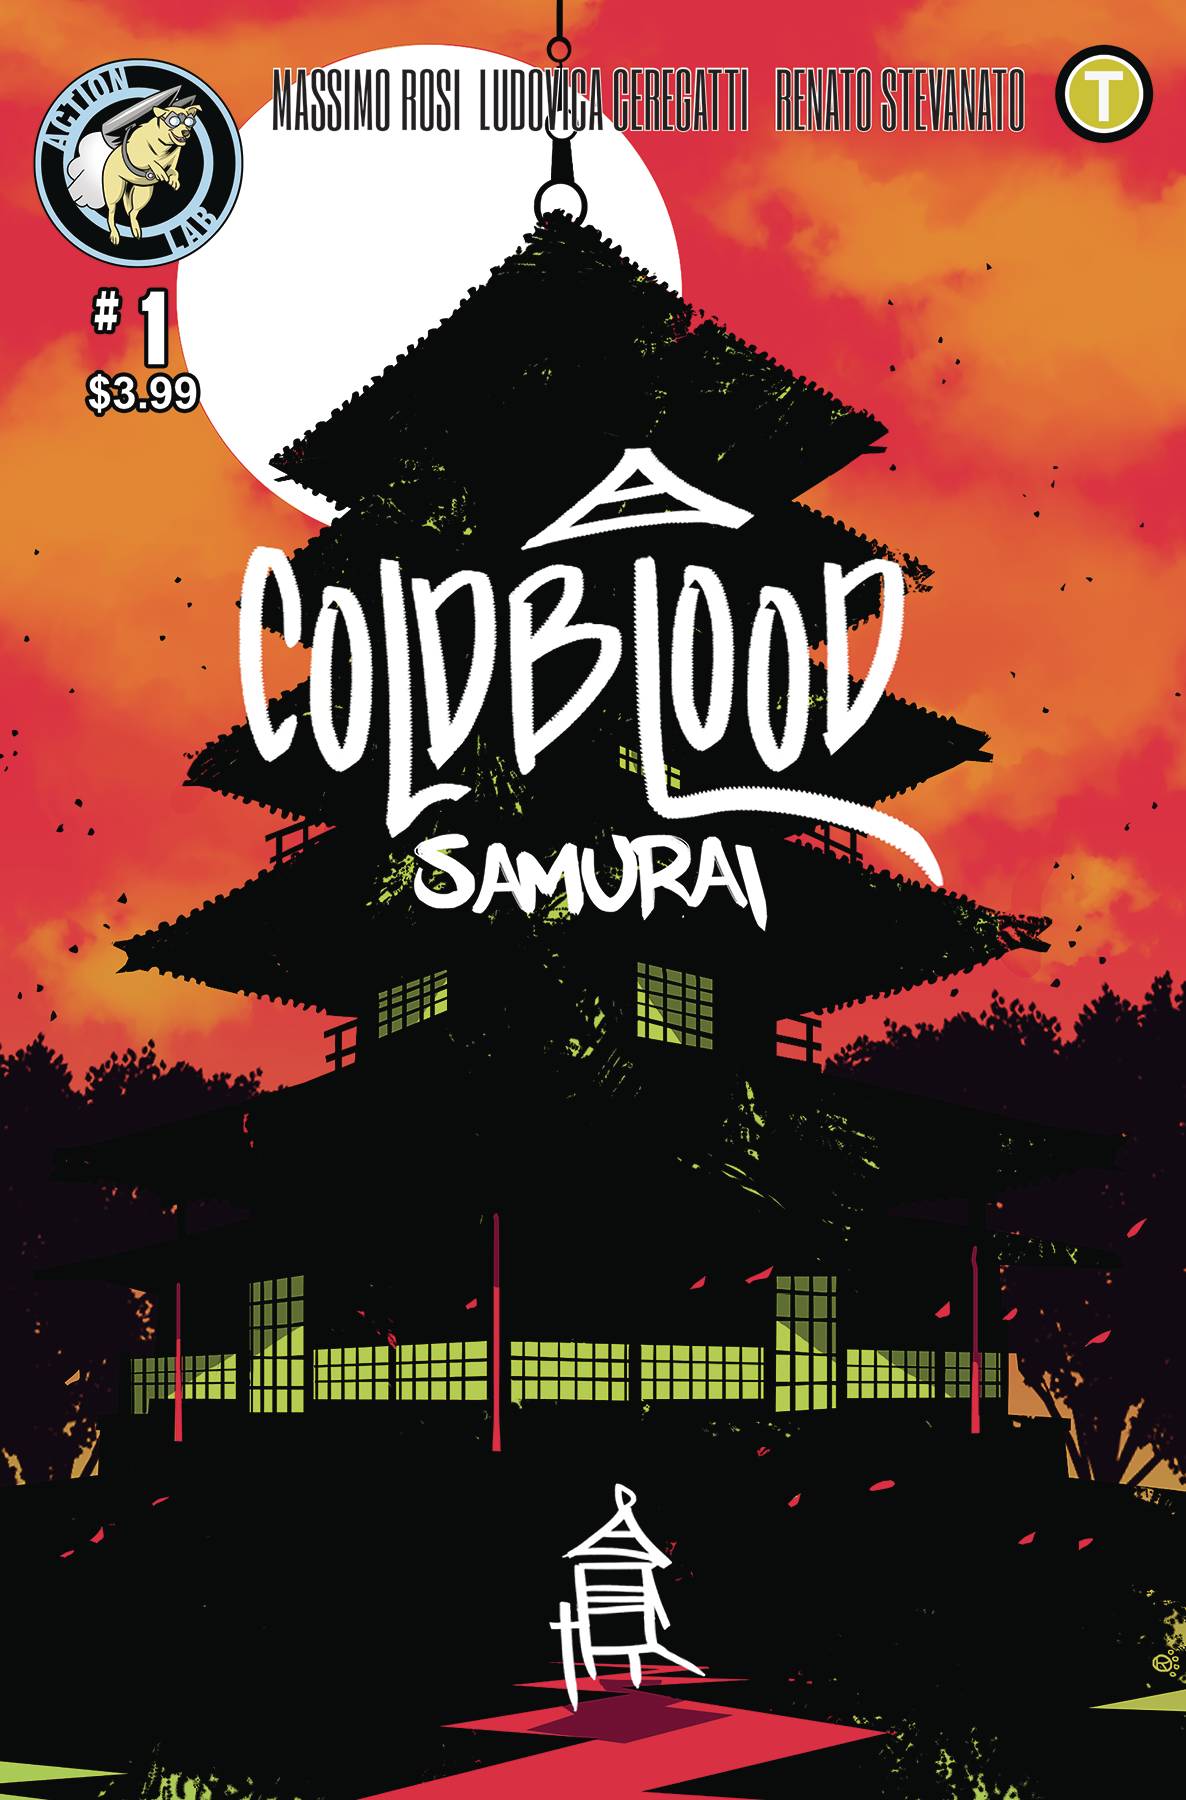 COLD BLOOD SAMURAI #1 04/10/19 FOC 03/18/19